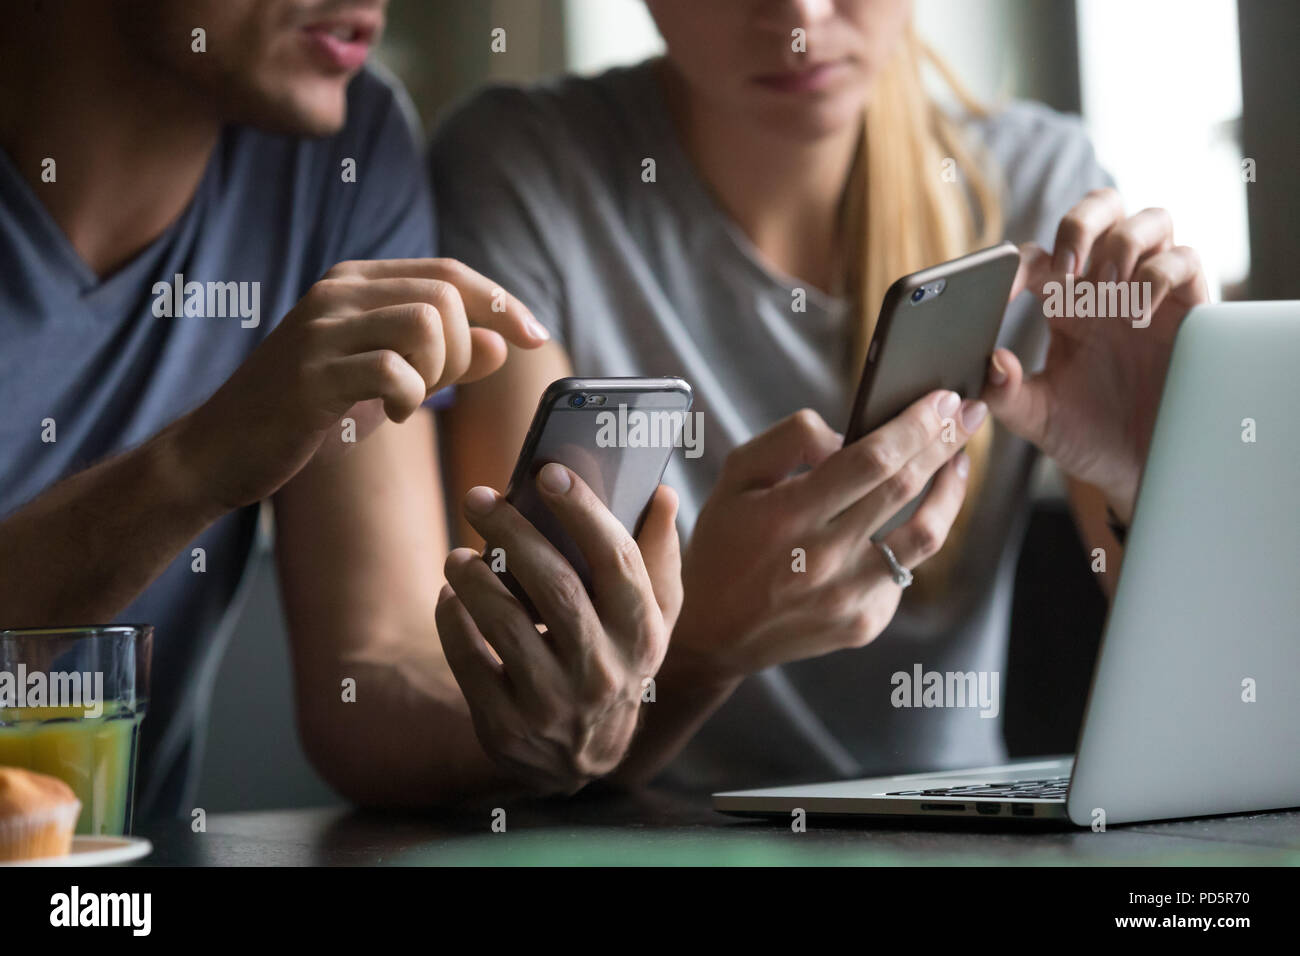 L'homme et de la femme à l'aide d'apps mobiles smartphones discuter, Close up Banque D'Images